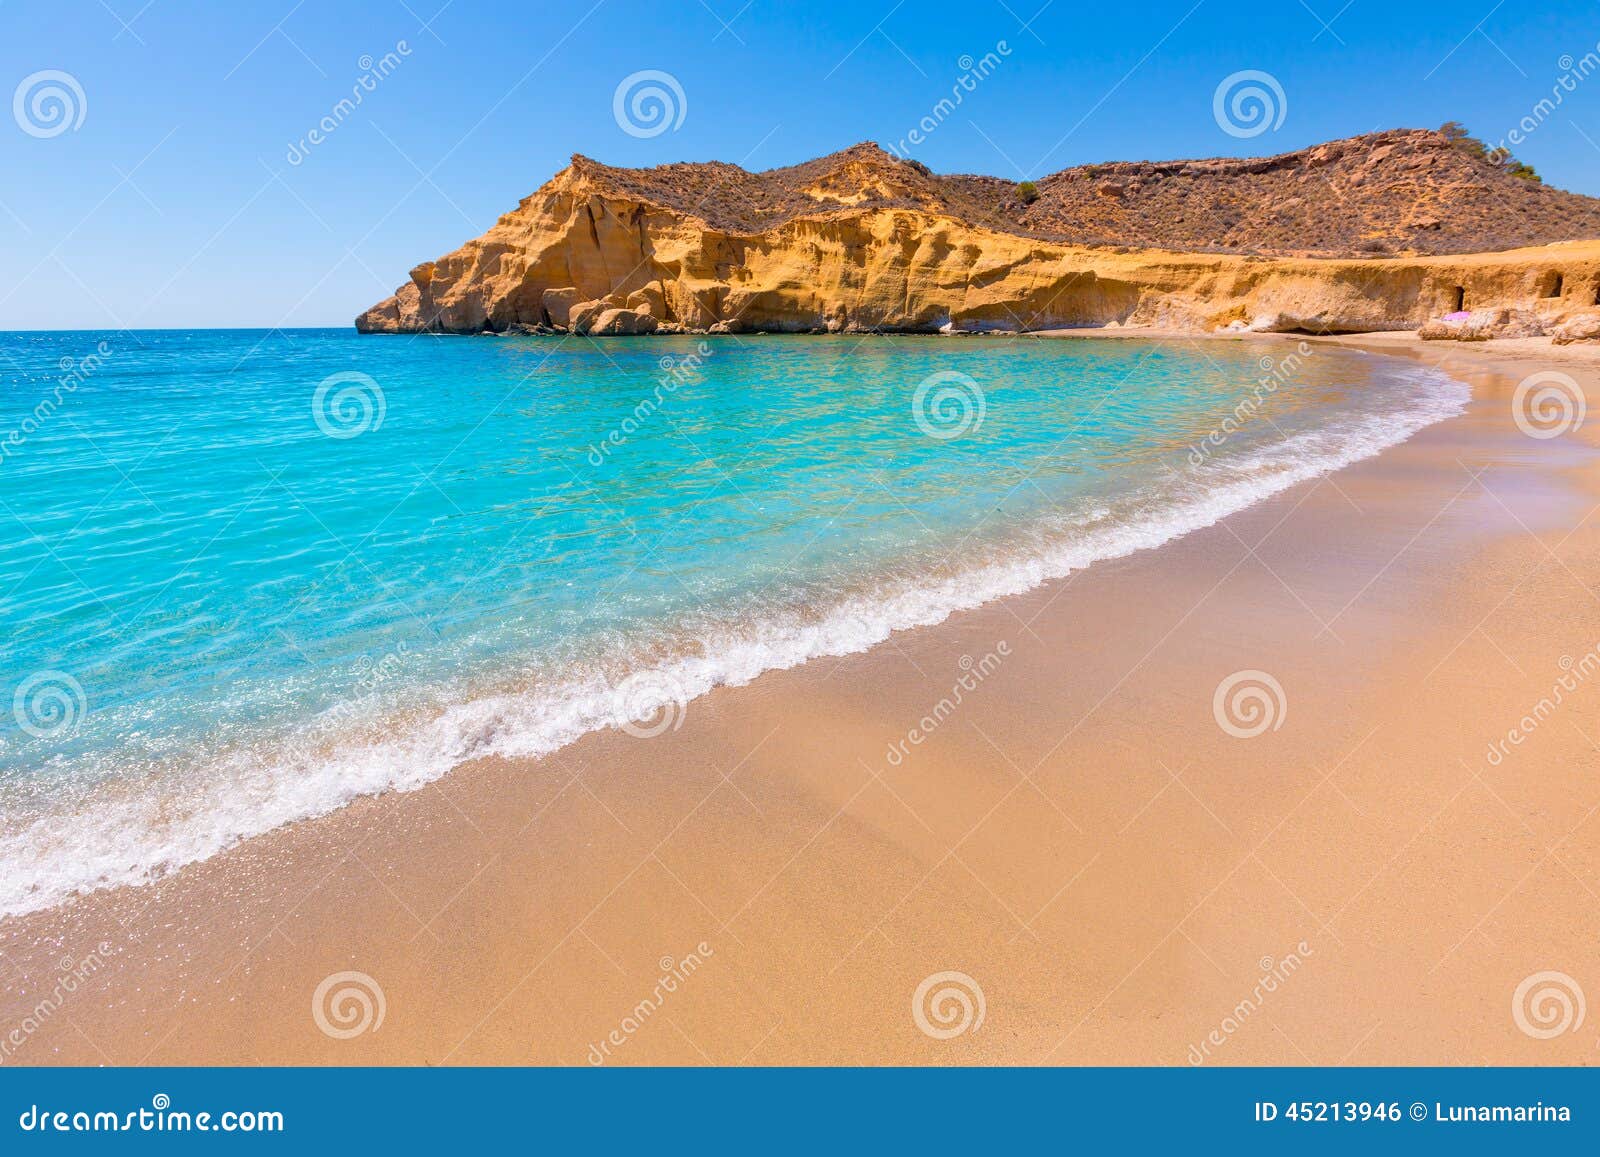 cocedores beach in murcia near aguilas spain